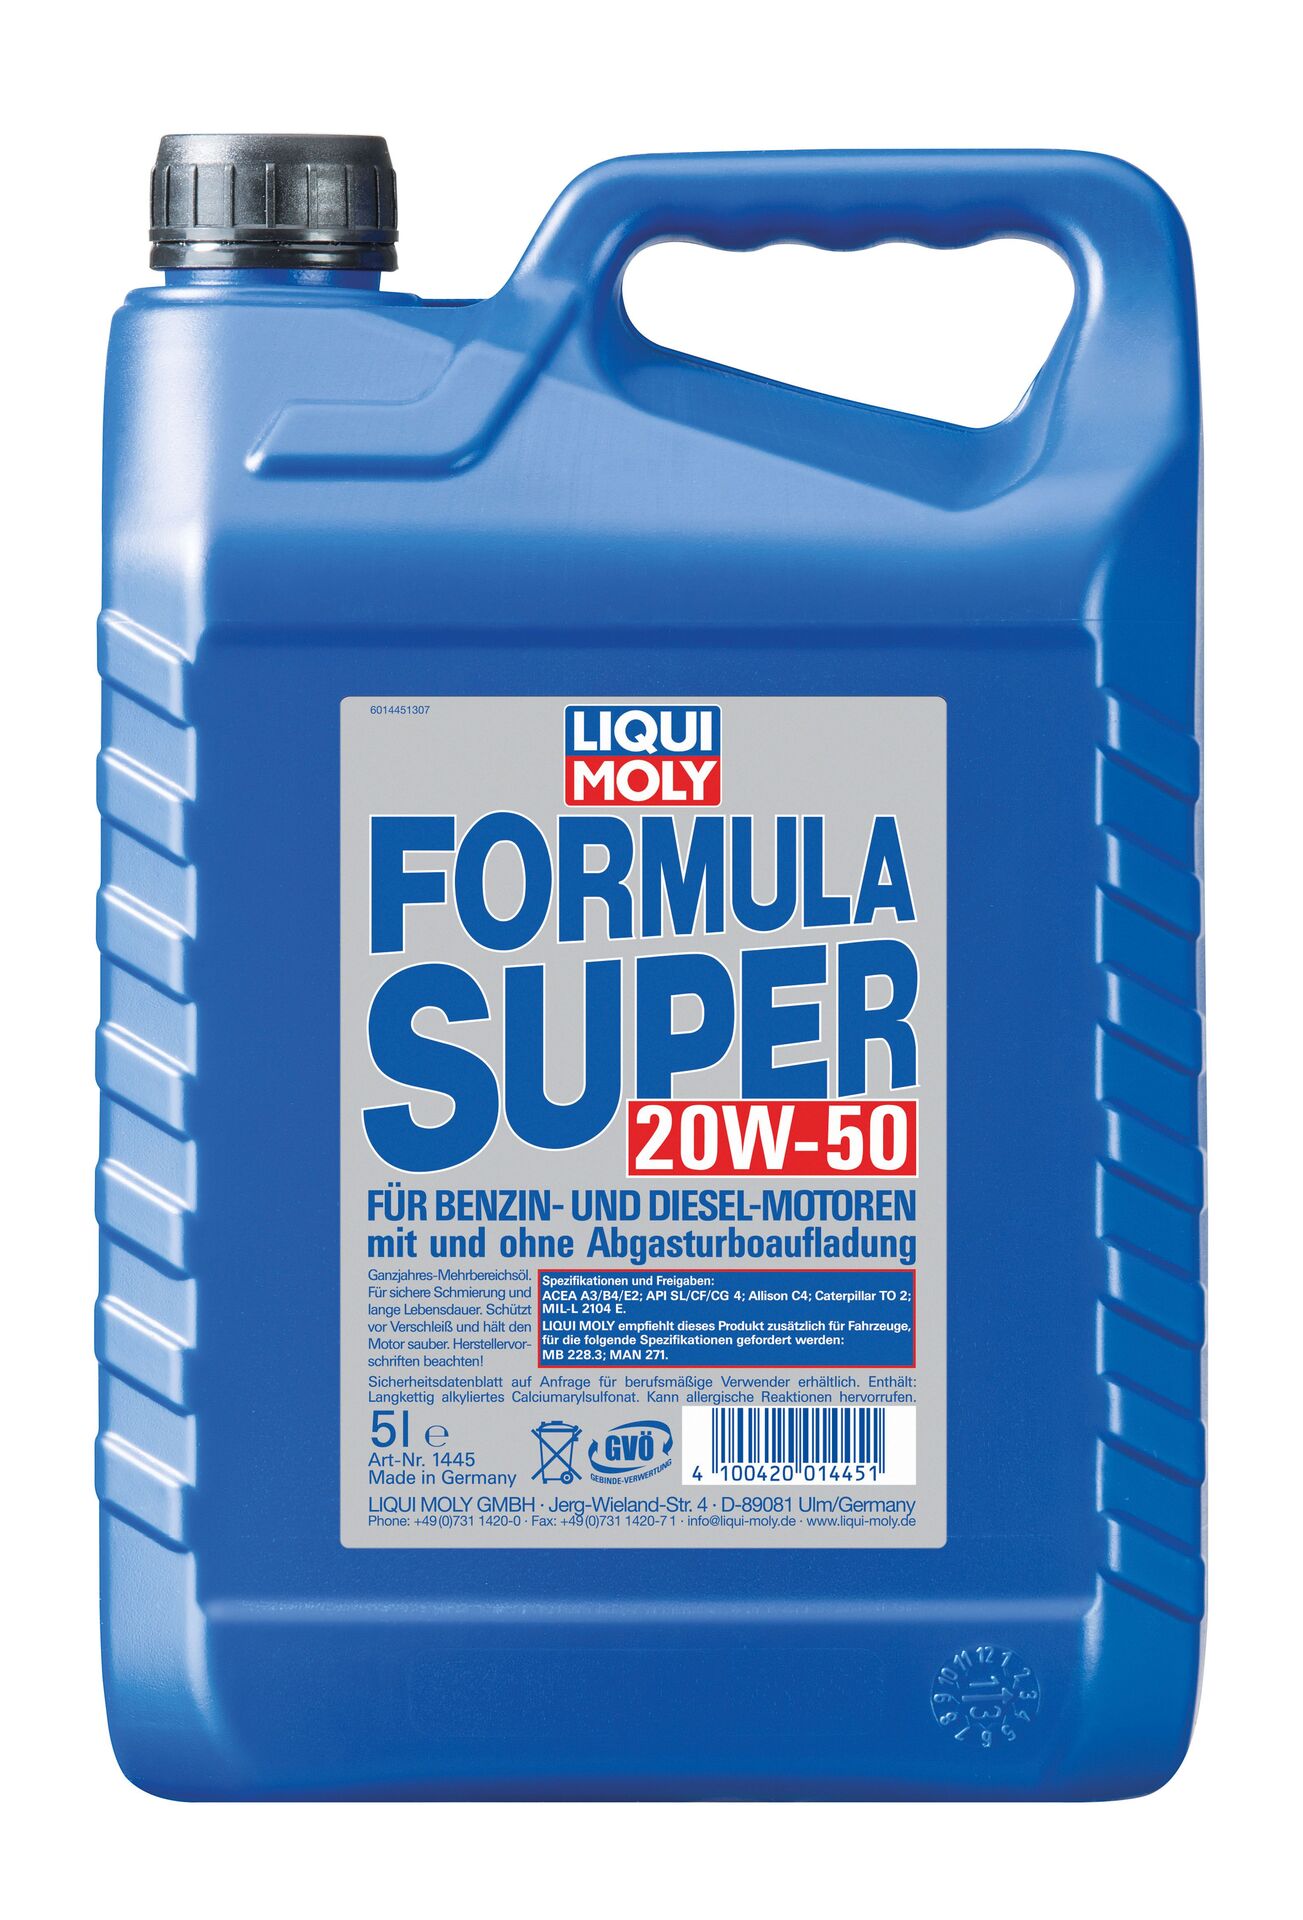 Liqui Moly Formula Super 20 W-50